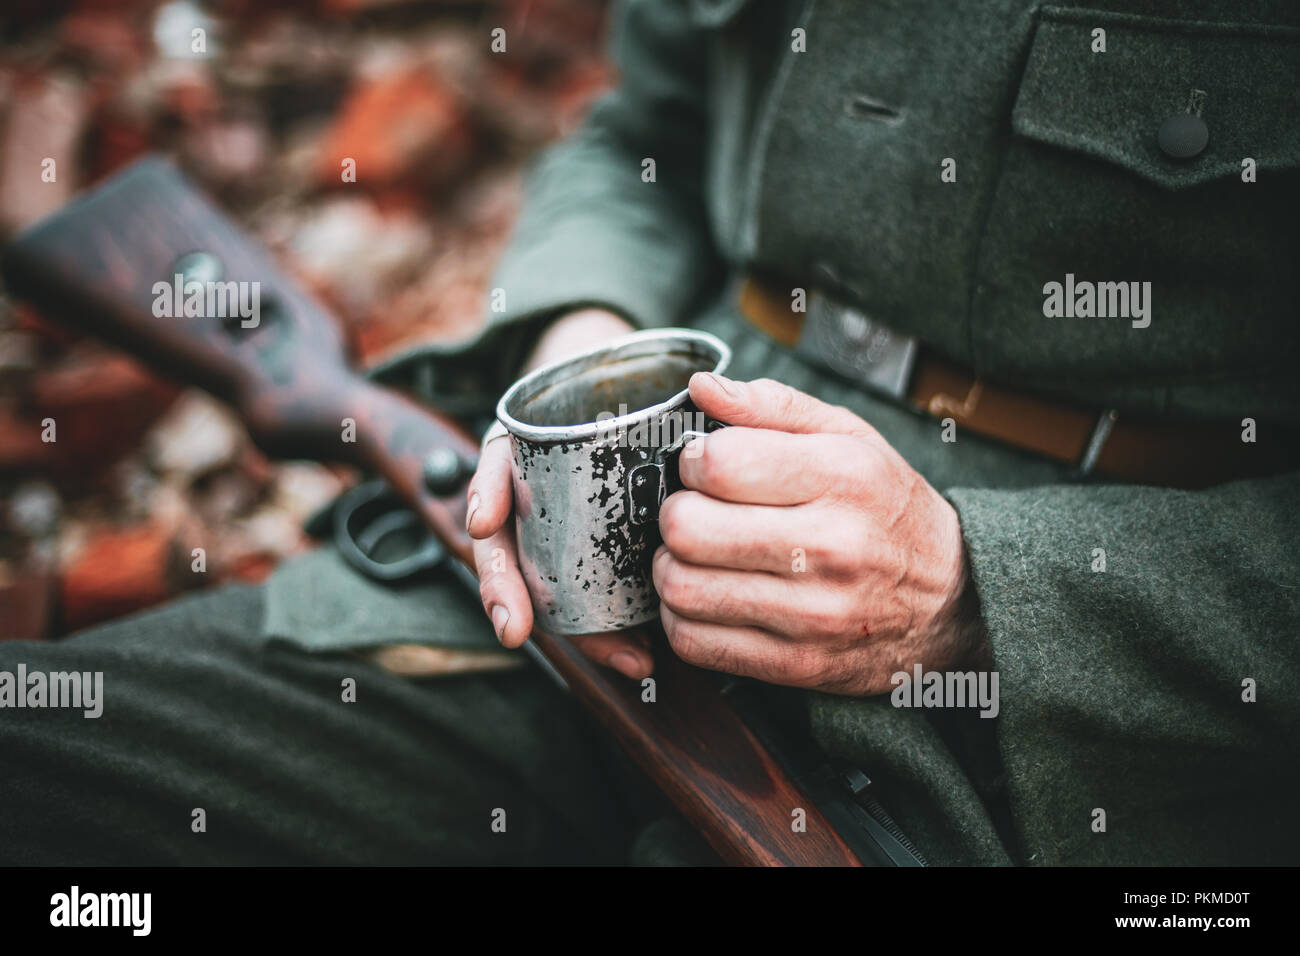 Nicht identifizierte Re-Enactor als Deutsche Wehrmacht Infanterie Soldat im  Zweiten Weltkrieg Holding Tasse Tasse mit Wasser oder Tee in Camping im  Herbst Wald gekleidet Stockfotografie - Alamy